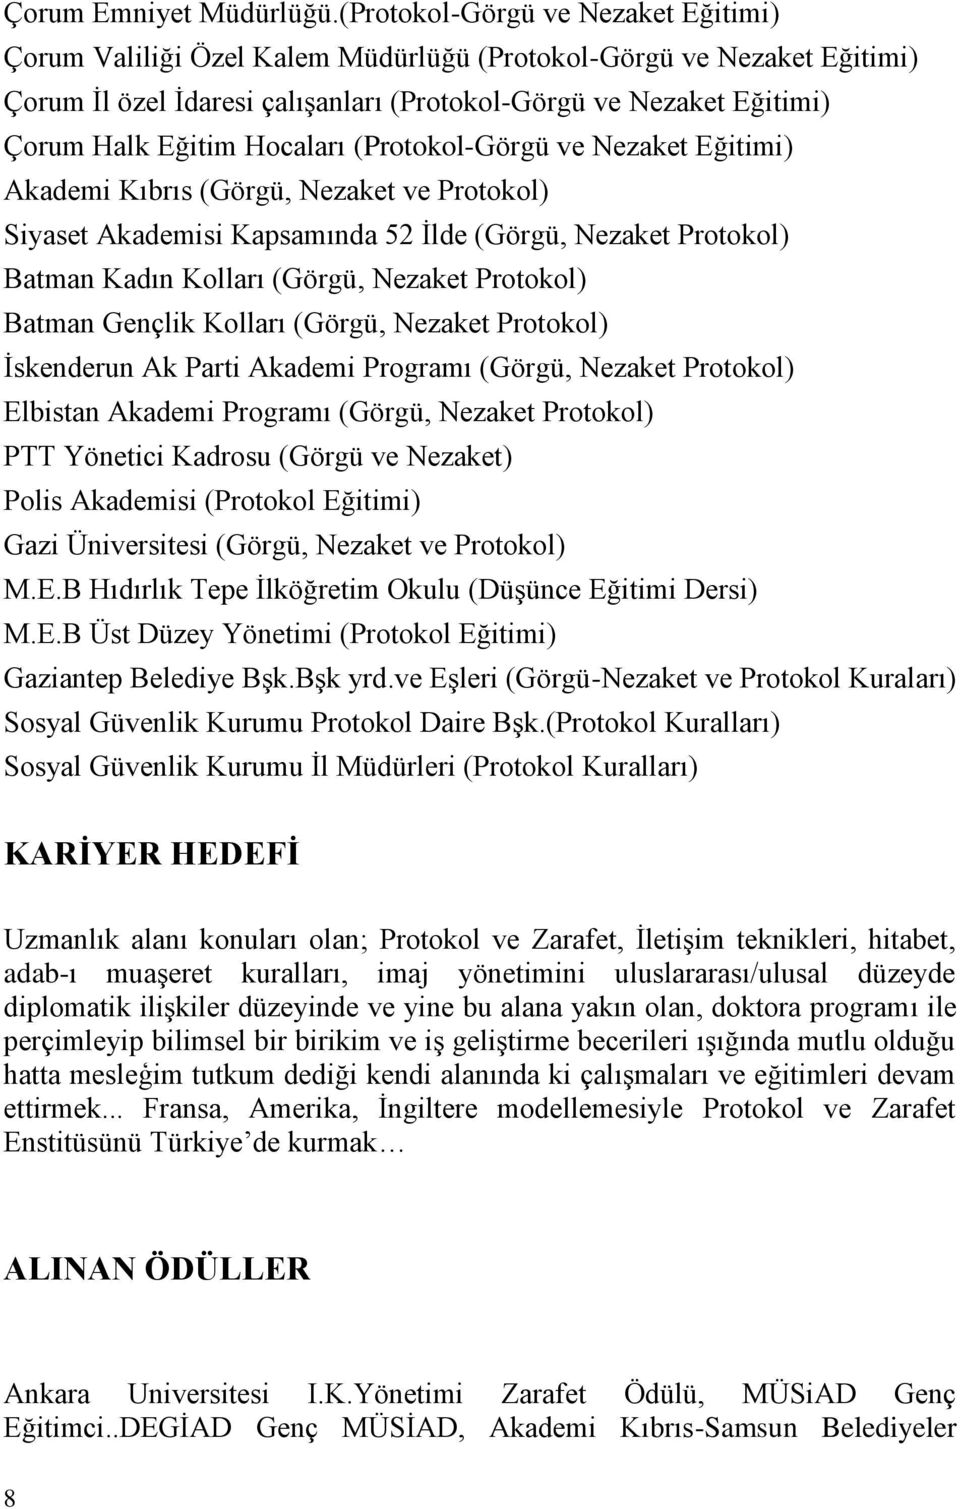 Hocaları (Protokol-Görgü ve Nezaket Eğitimi) Akademi Kıbrıs (Görgü, Nezaket ve Protokol) Siyaset Akademisi Kapsamında 52 İlde (Görgü, Nezaket Protokol) Batman Kadın Kolları (Görgü, Nezaket Protokol)